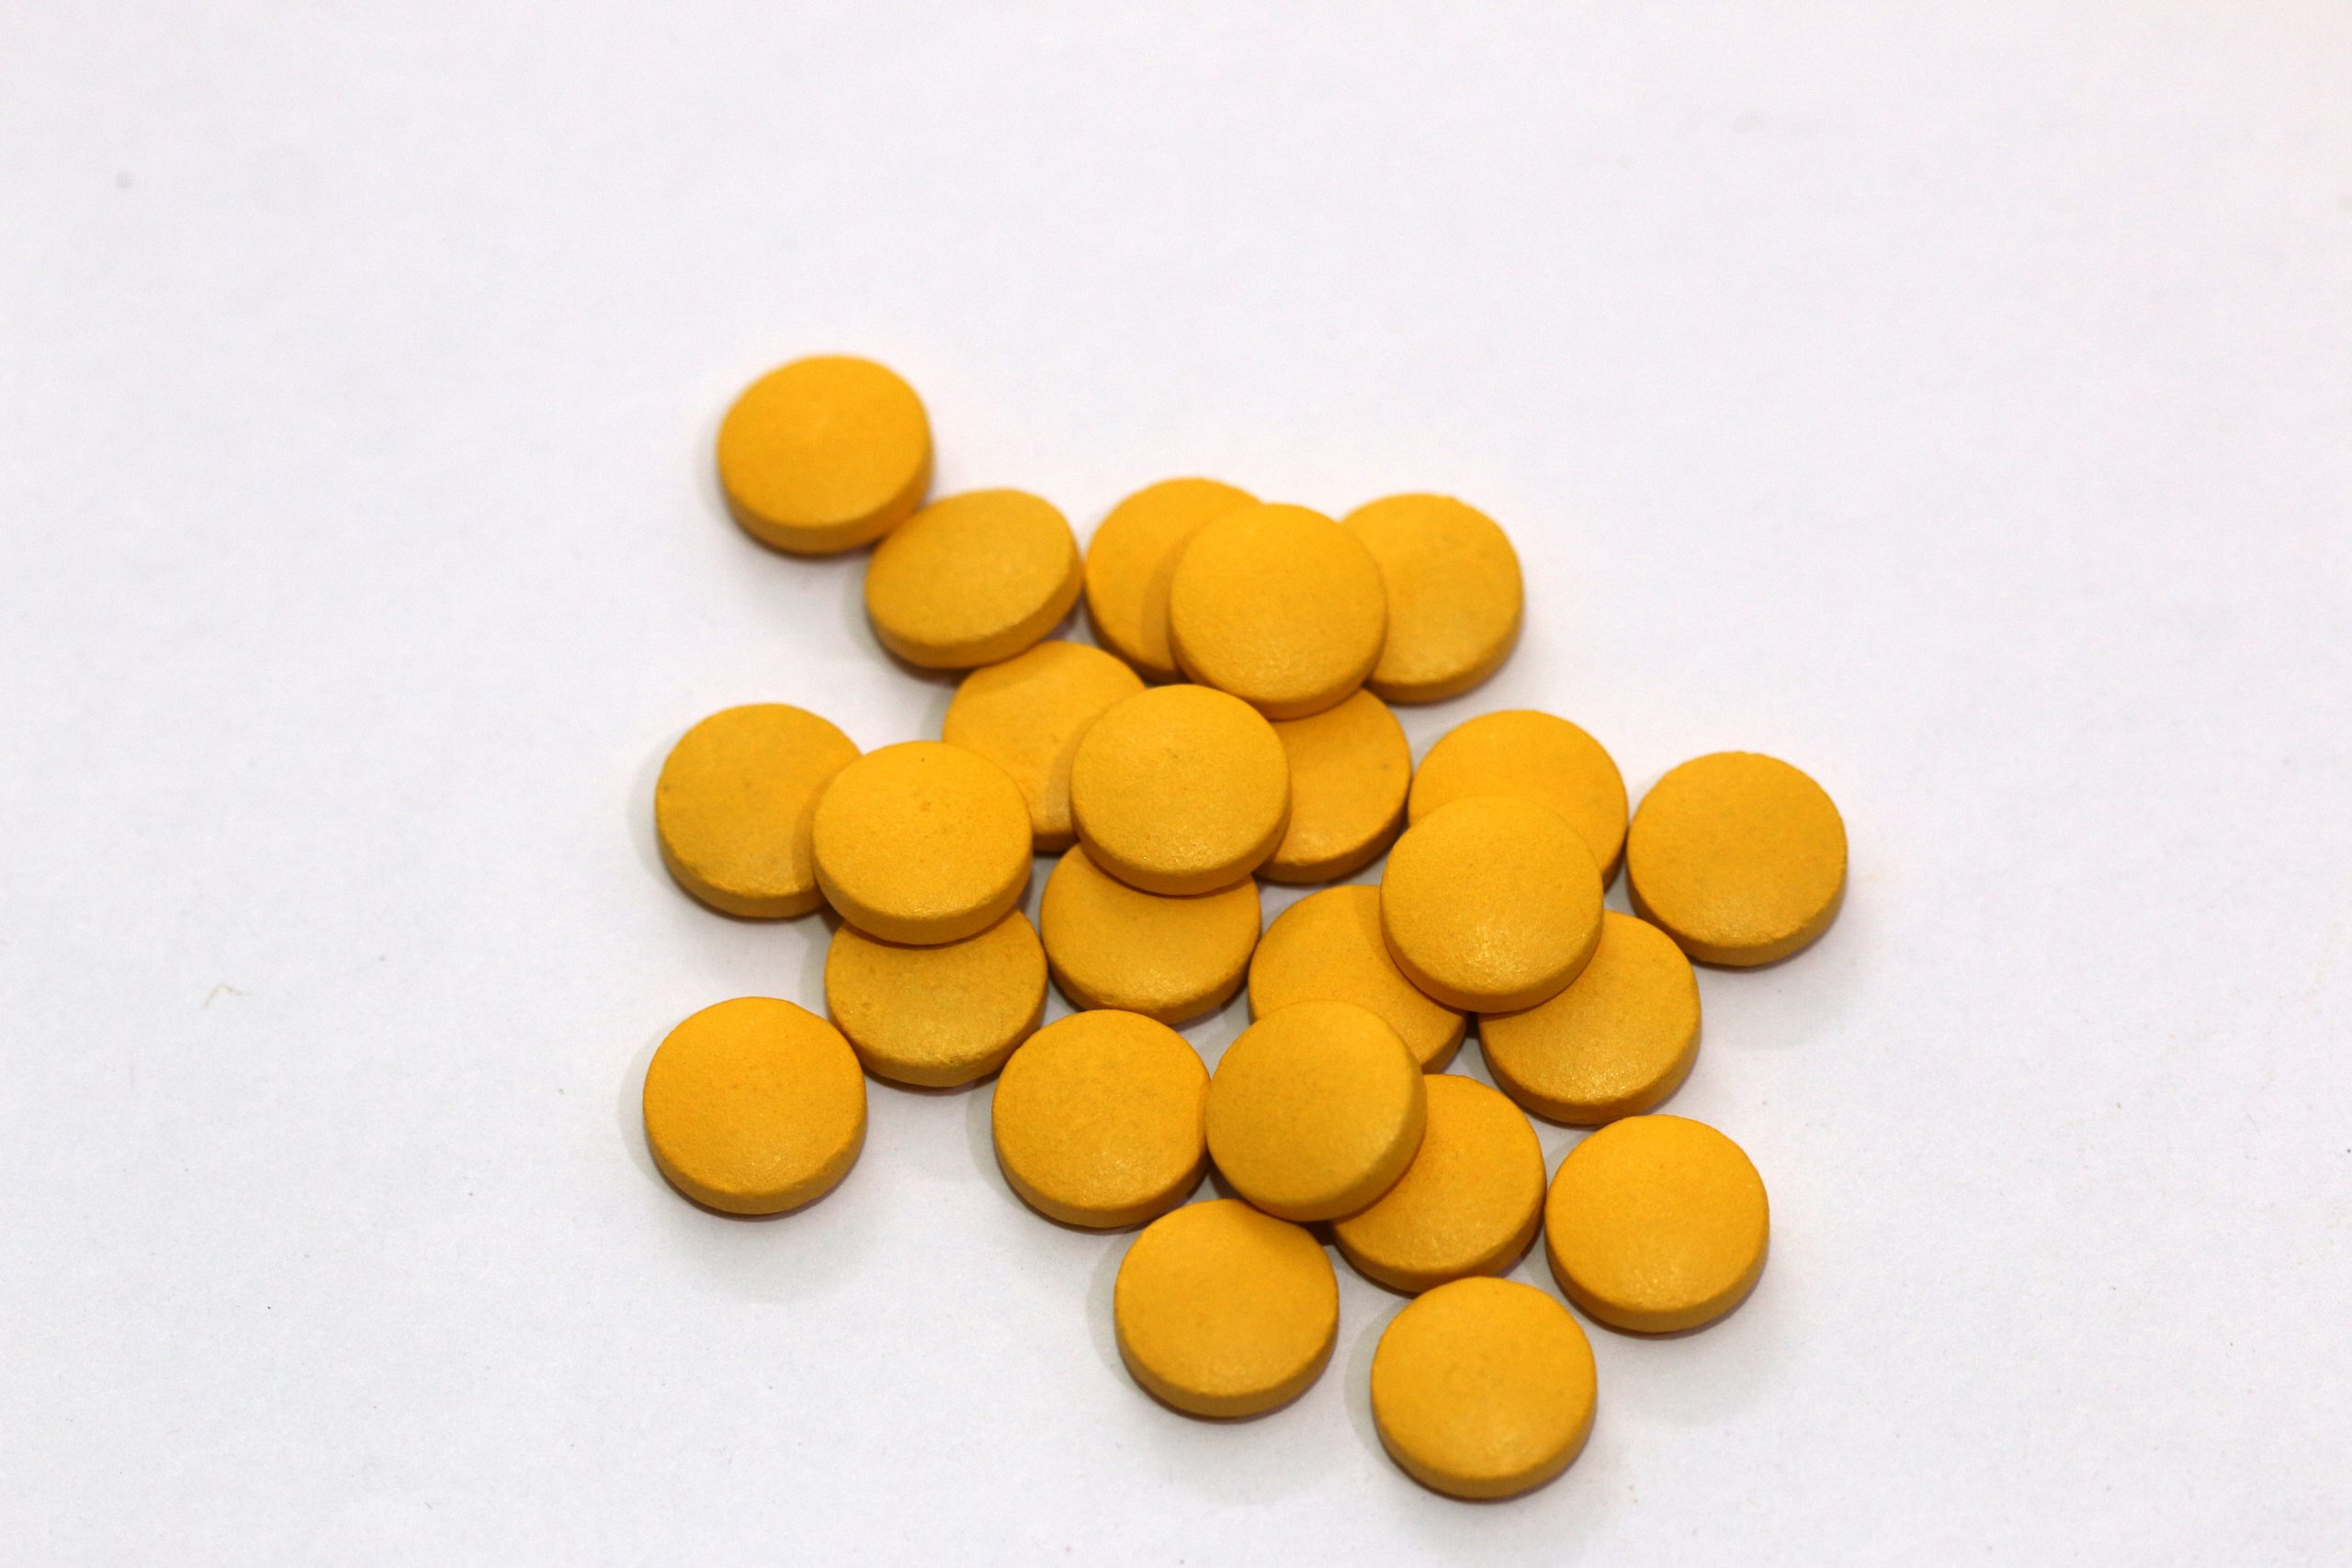 Yellow pills.